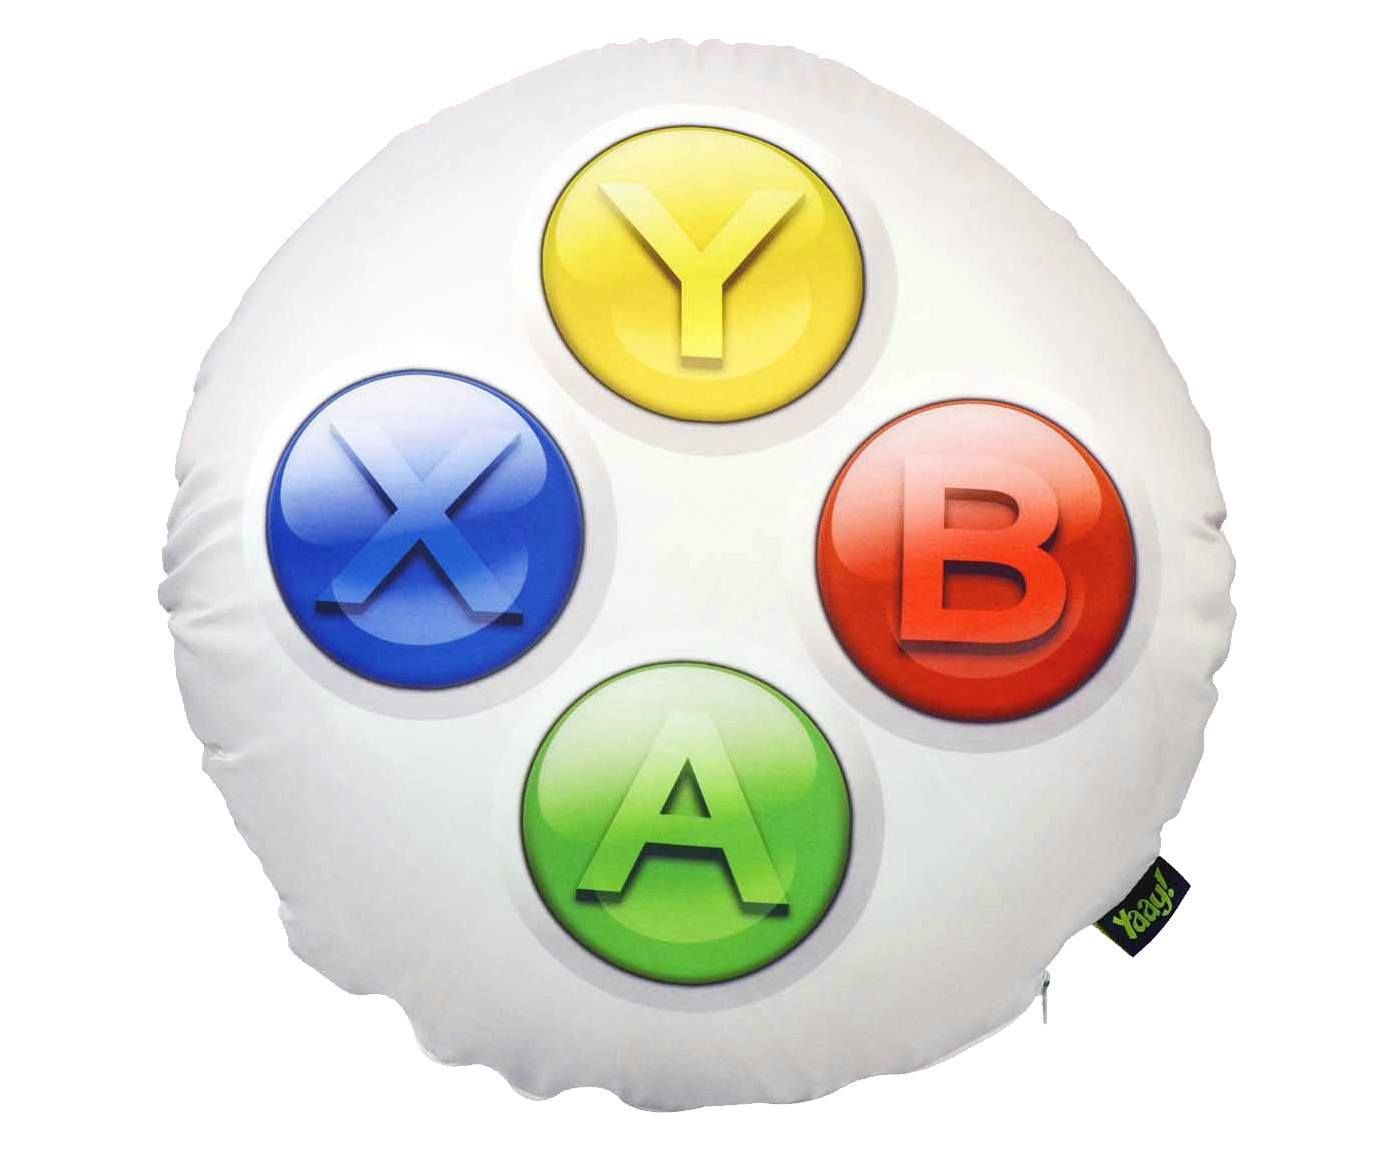 Almofada gamer joystick abyx | Westwing.com.br